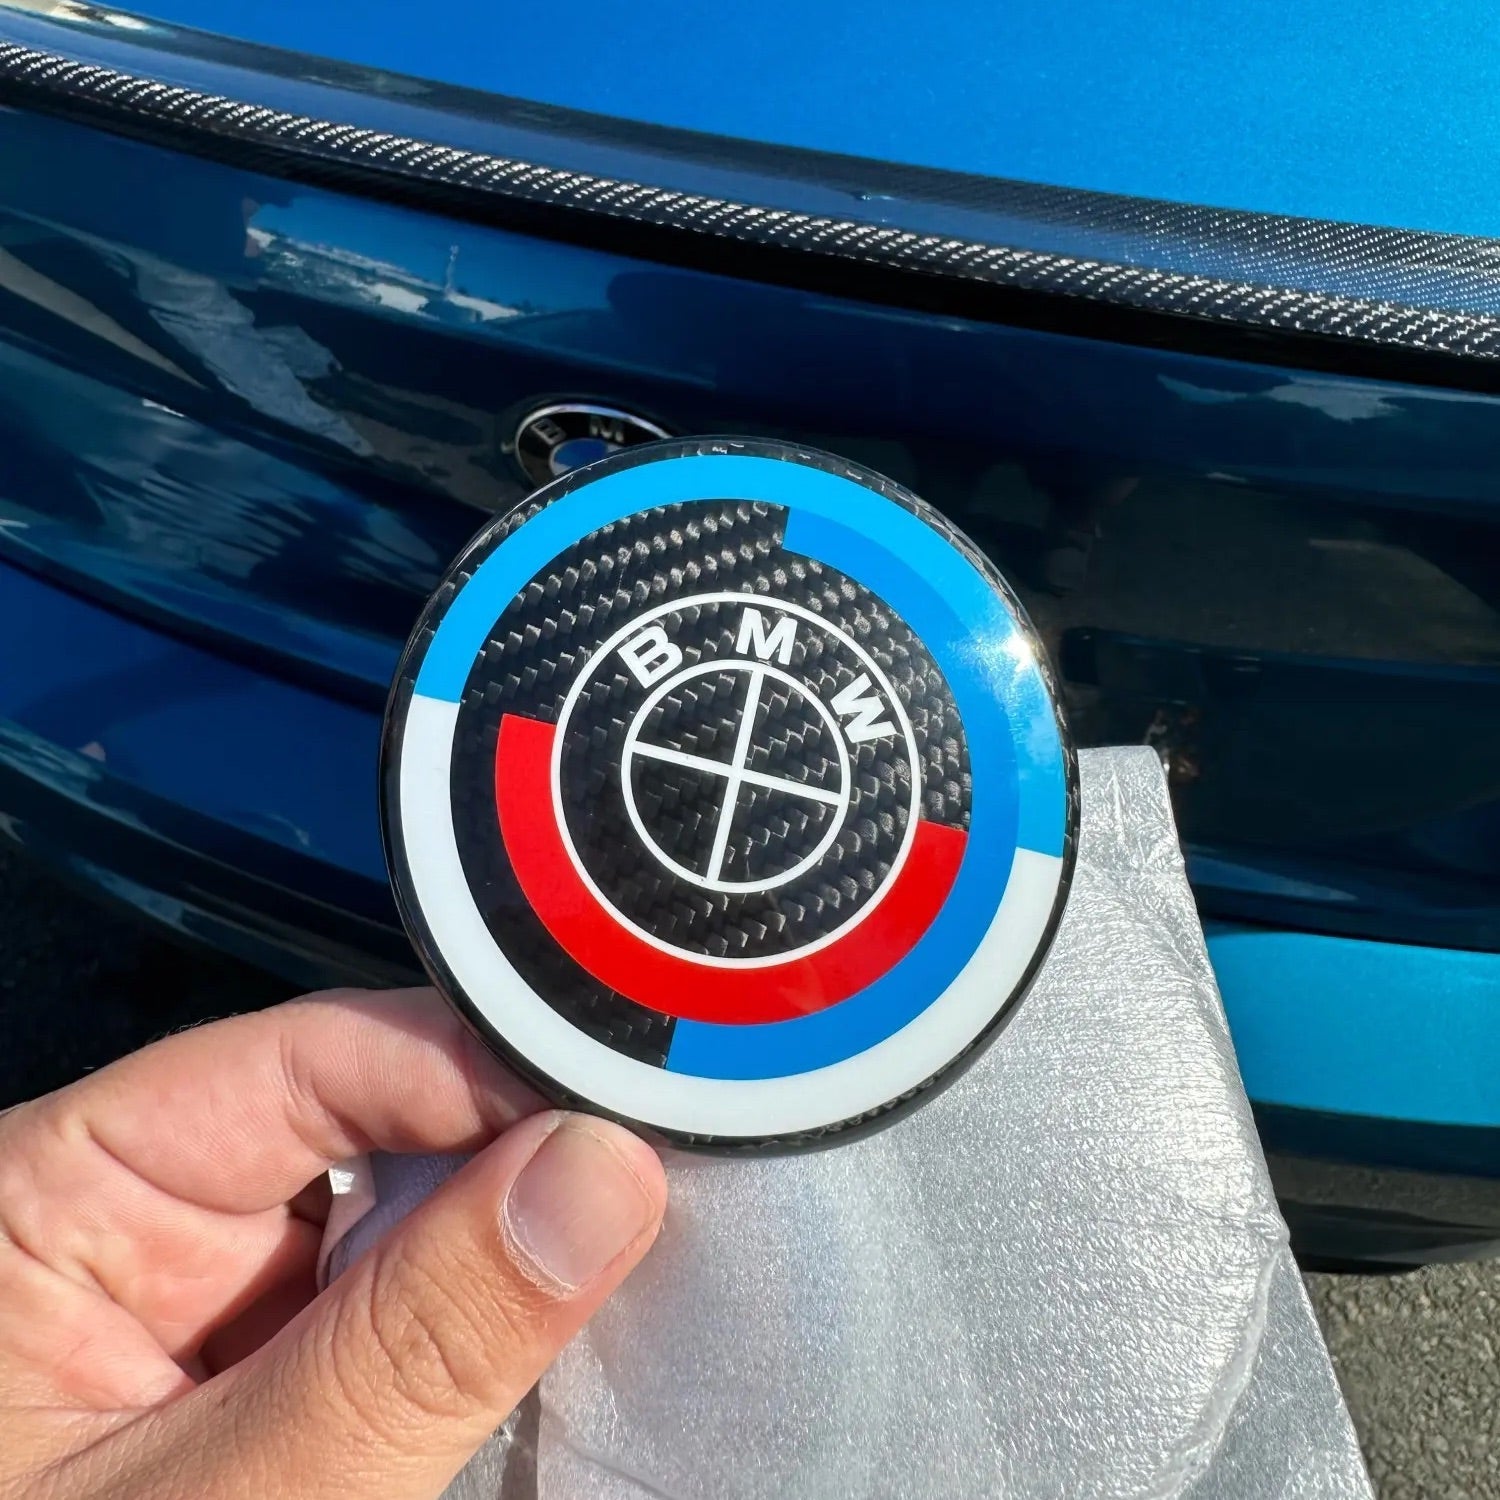 BMW 82MM 74MM 50th Anniversary Emblem, Car Accessories